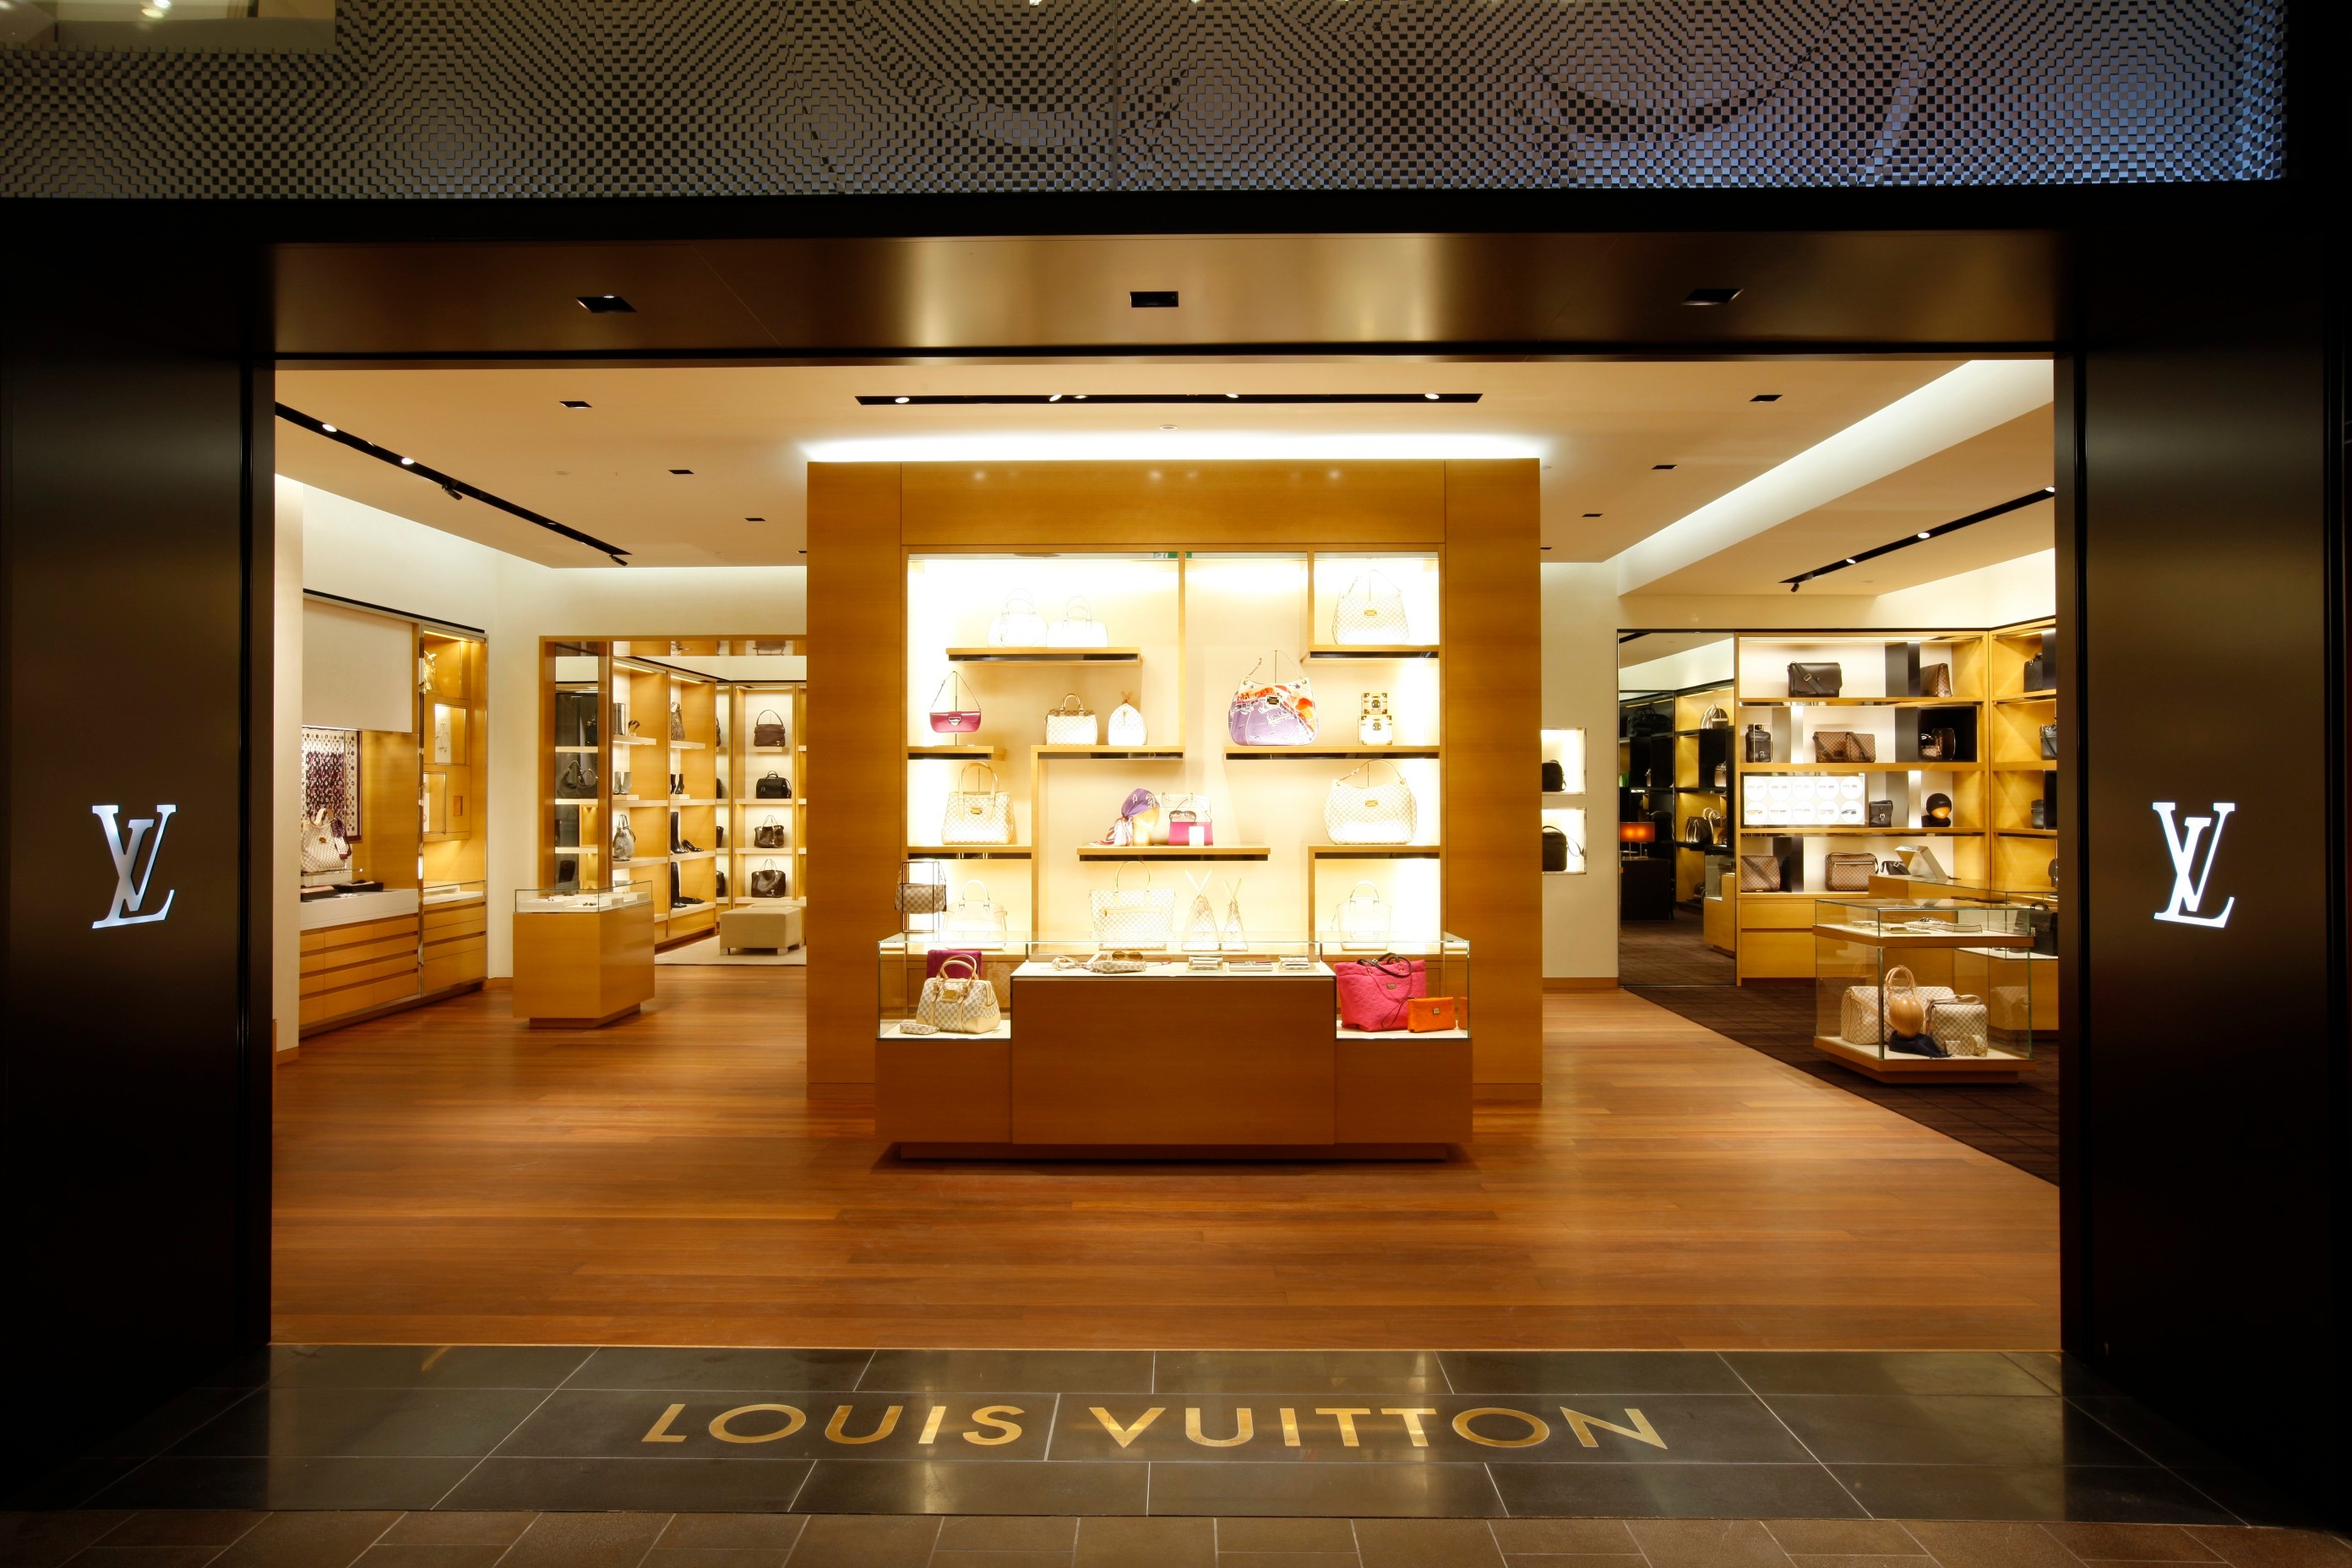 Bilder Louis Vuitton München Oberpollinger